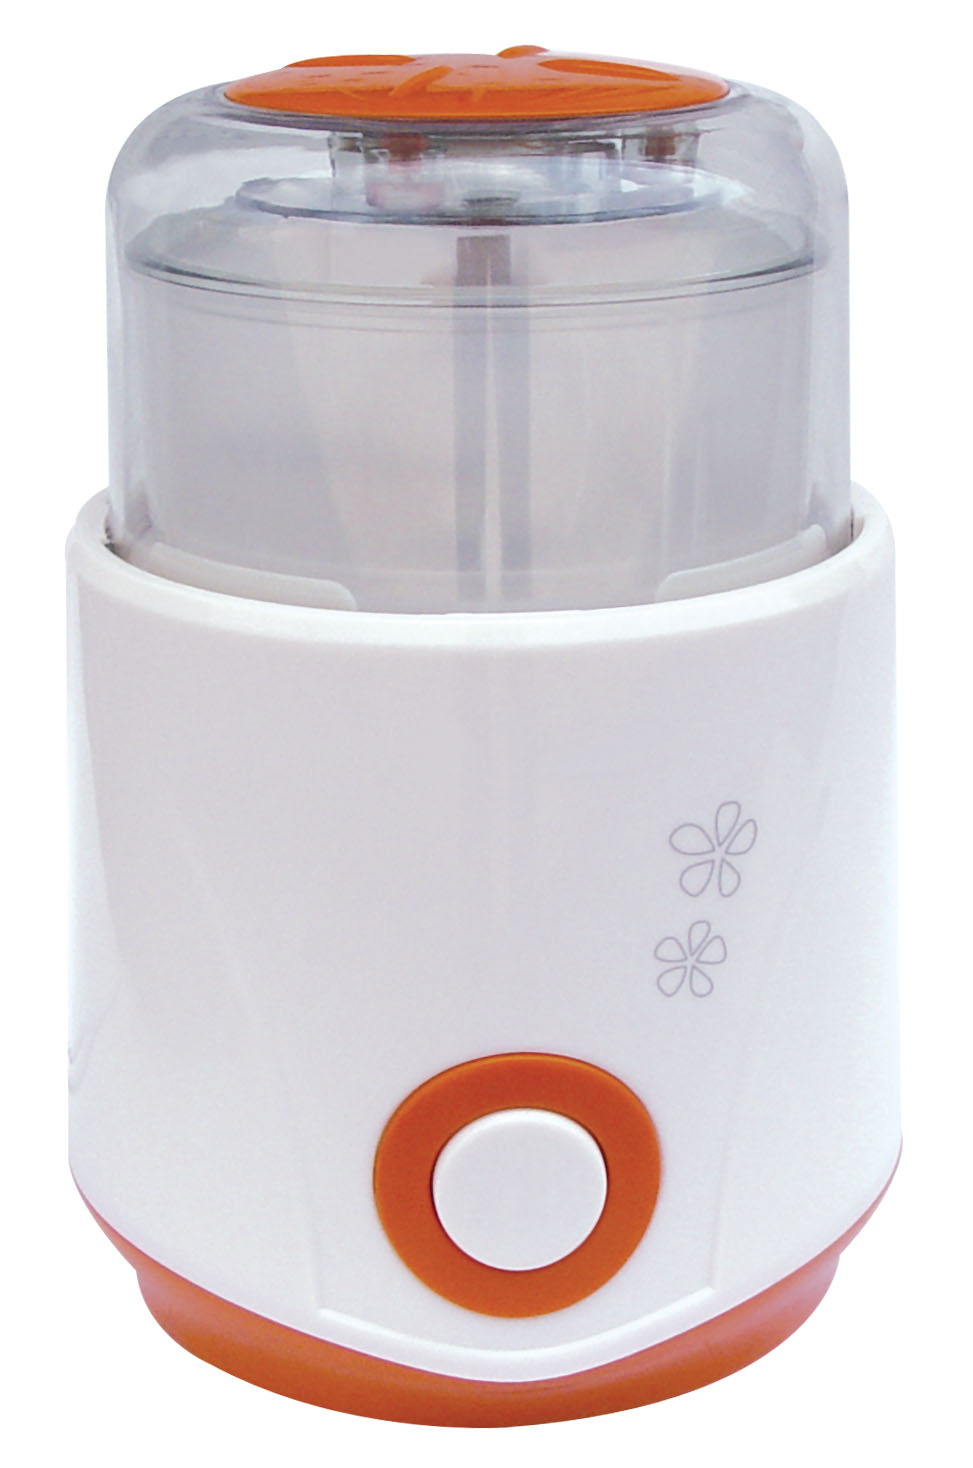 Blender grinder-Home use,300W,300G